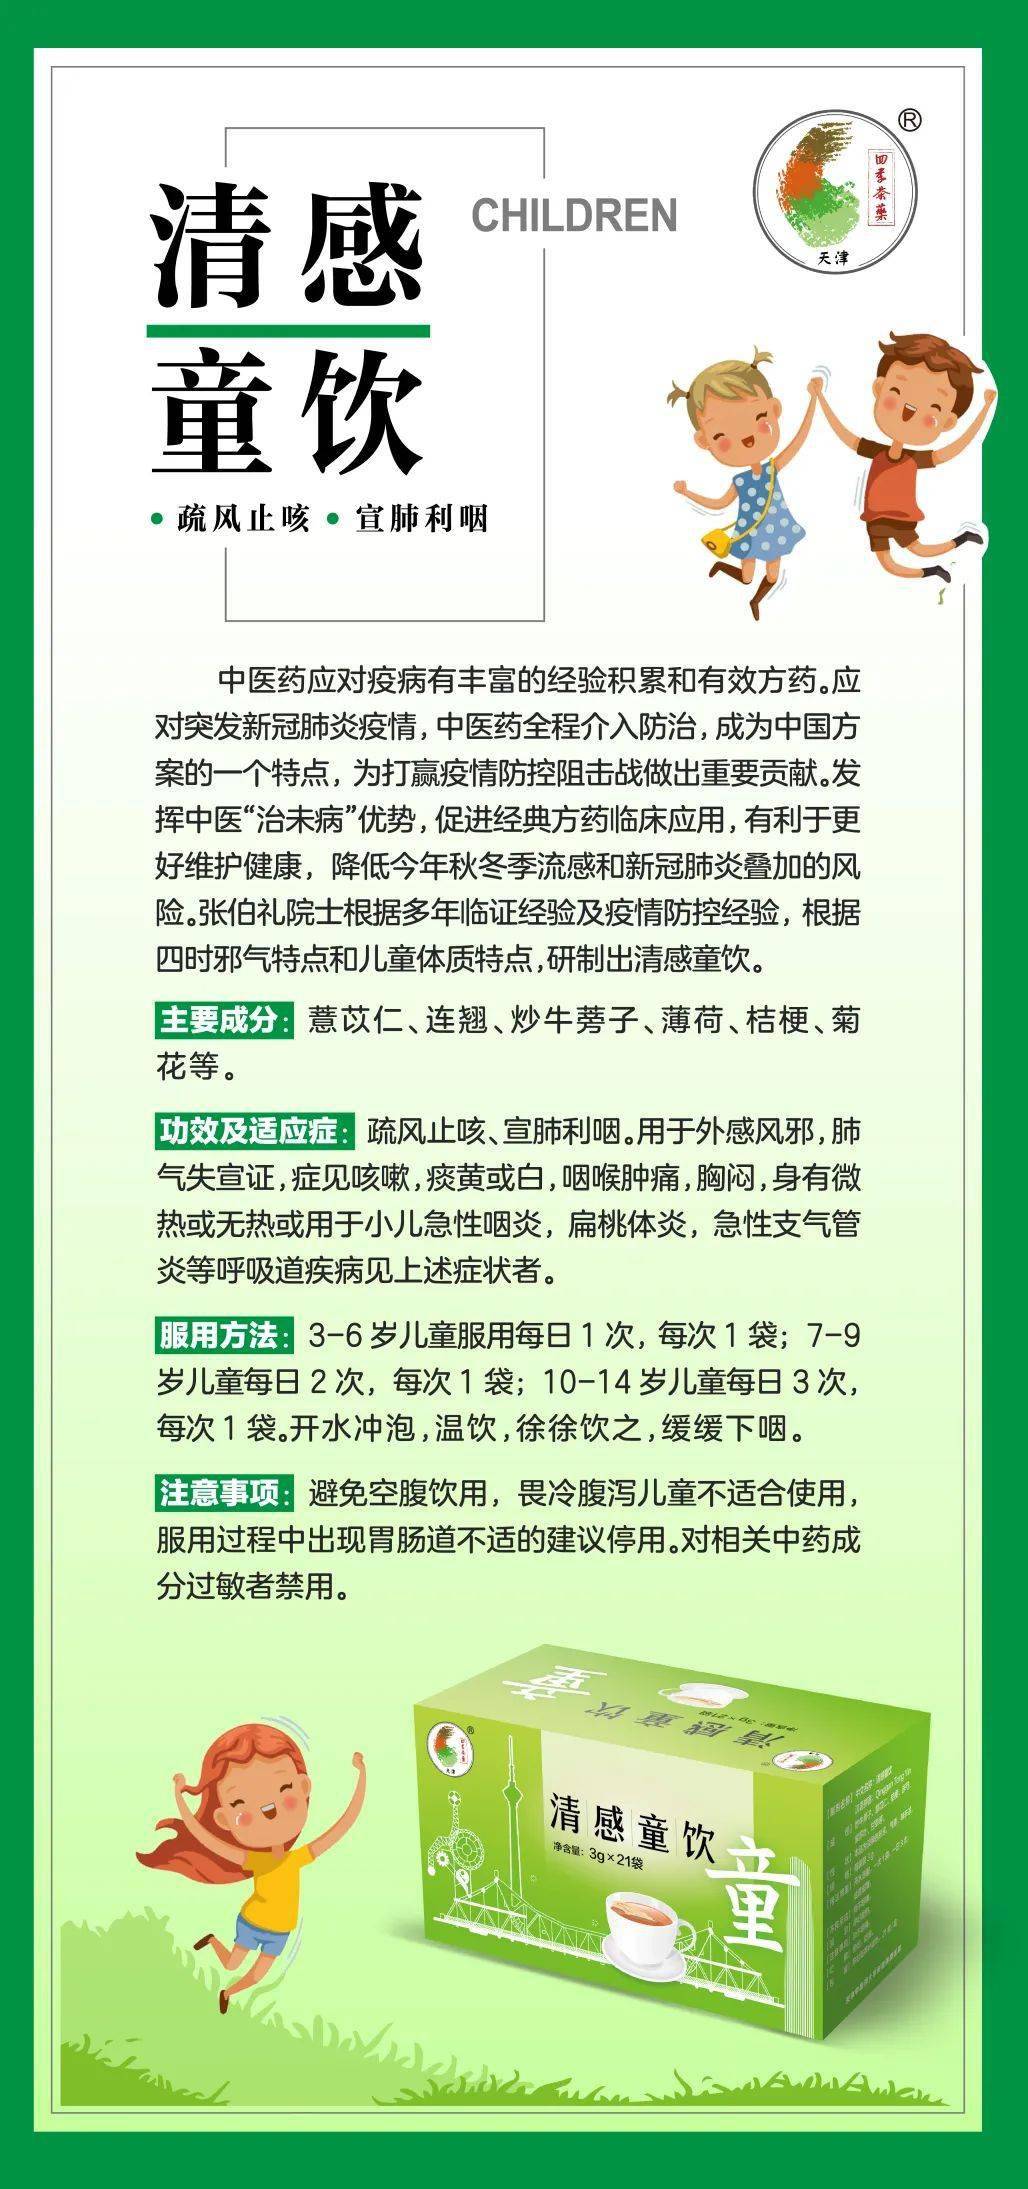 天津西青医院将陆续推出清感冬饮及清感童饮以应对季节流感和新冠肺炎叠加风险